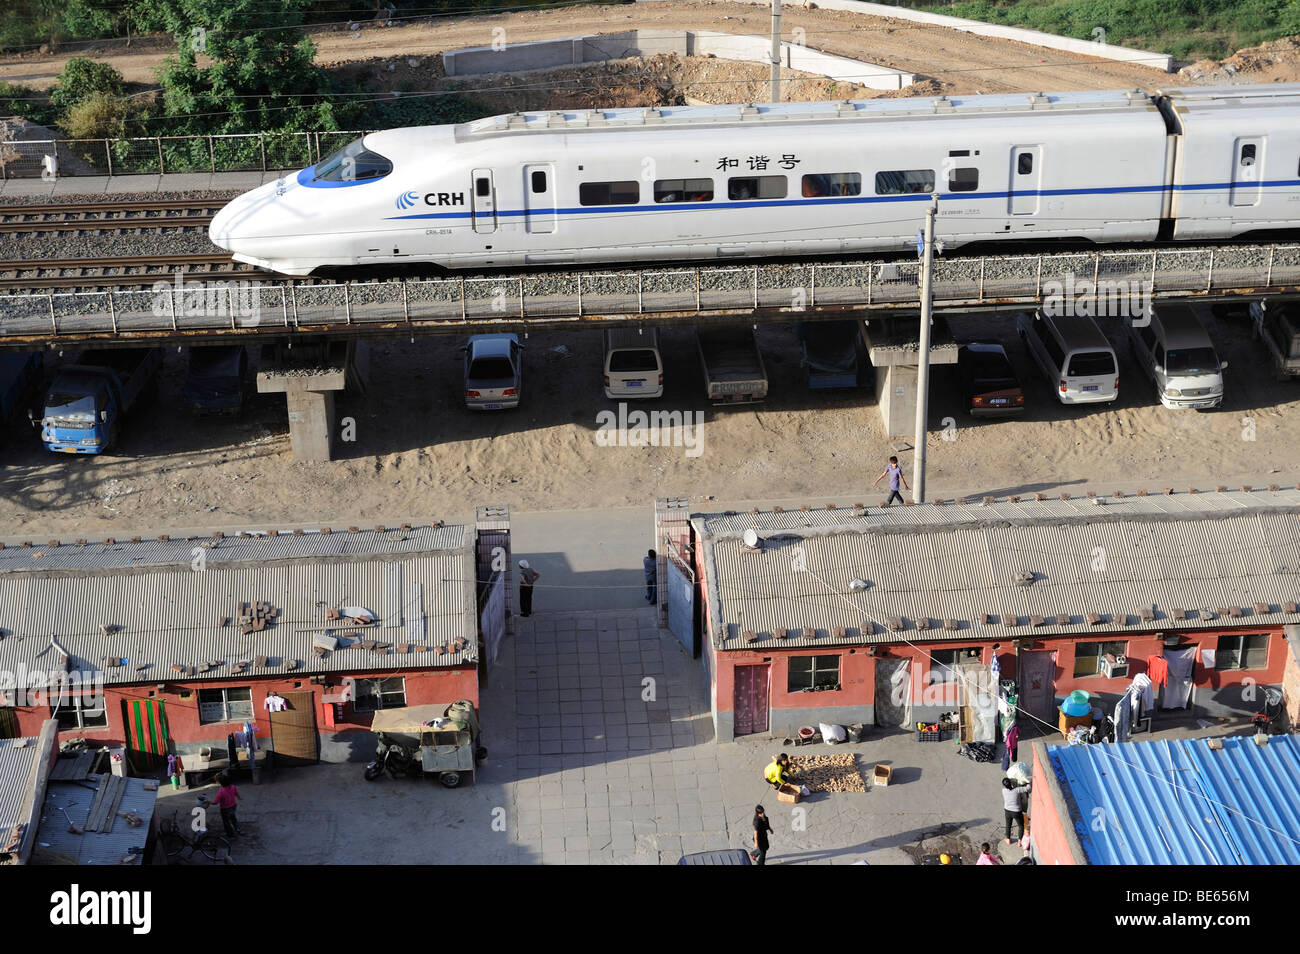 Ein CRH-Hochgeschwindigkeitszug China Railway High-Speed durchläuft eine Migrantengemeinschaft in Peking. 21 Sep 2009 Stockfoto